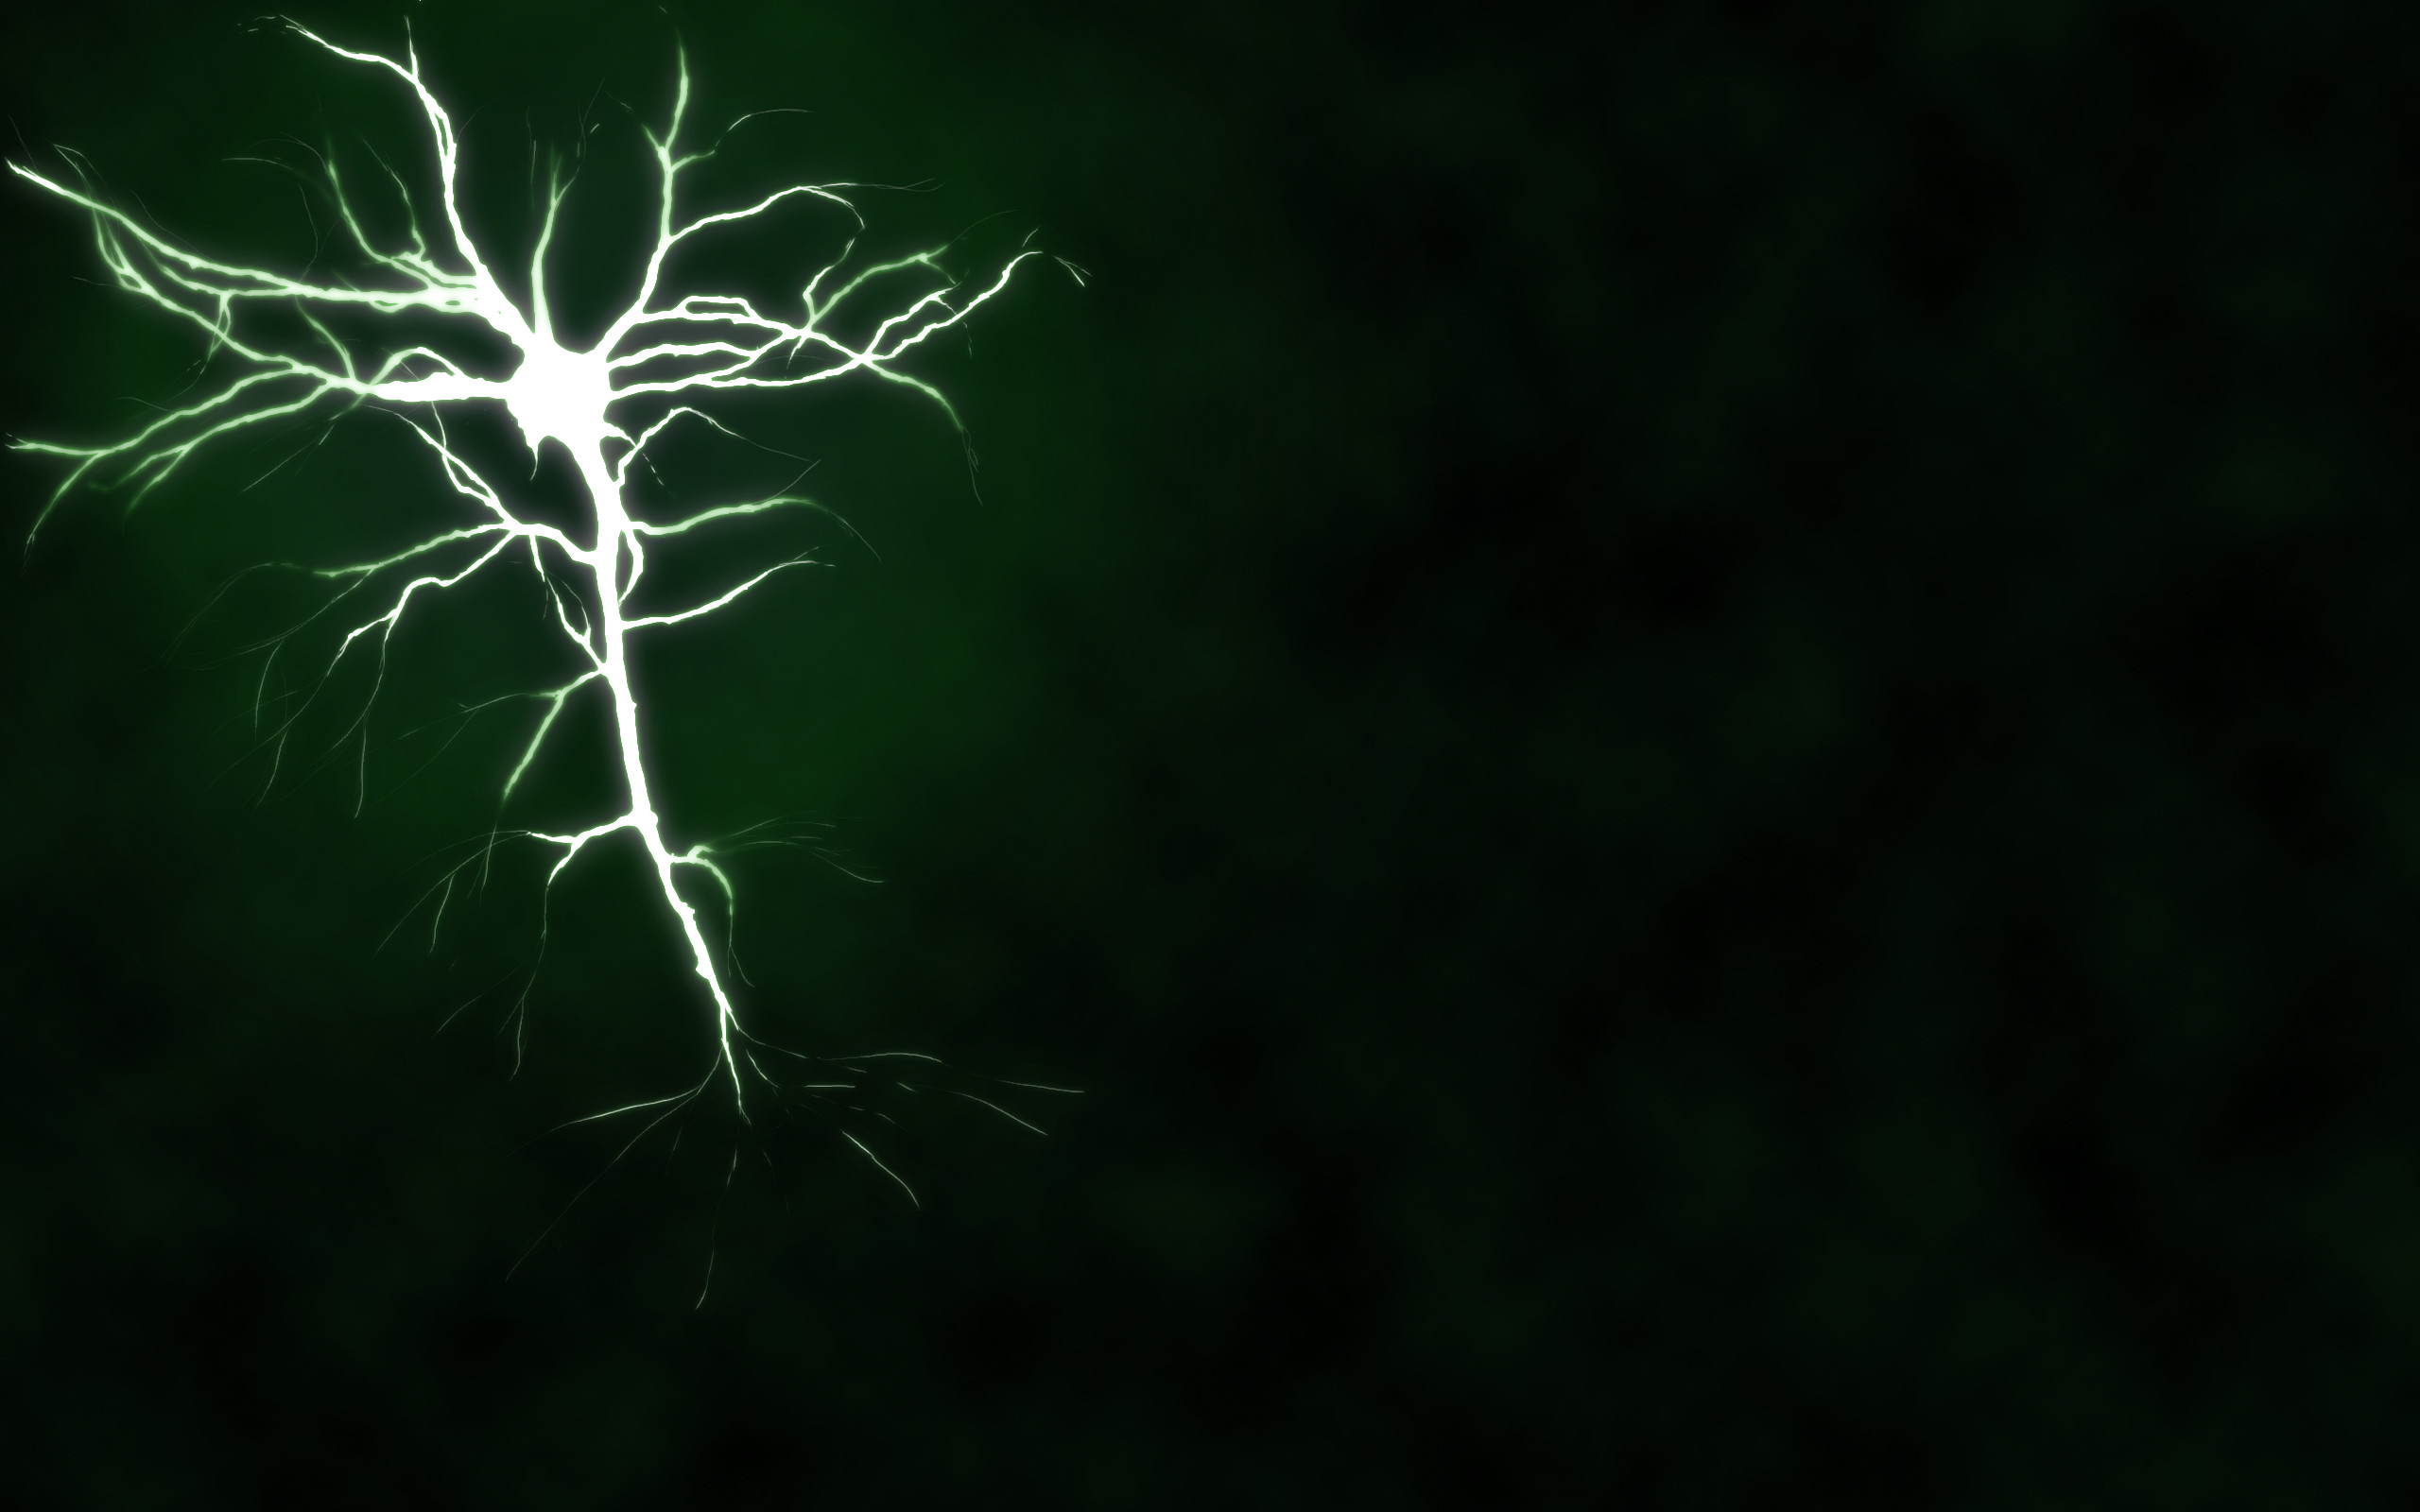 2560x1600 Neuron by Hazreth Neuron by Hazreth